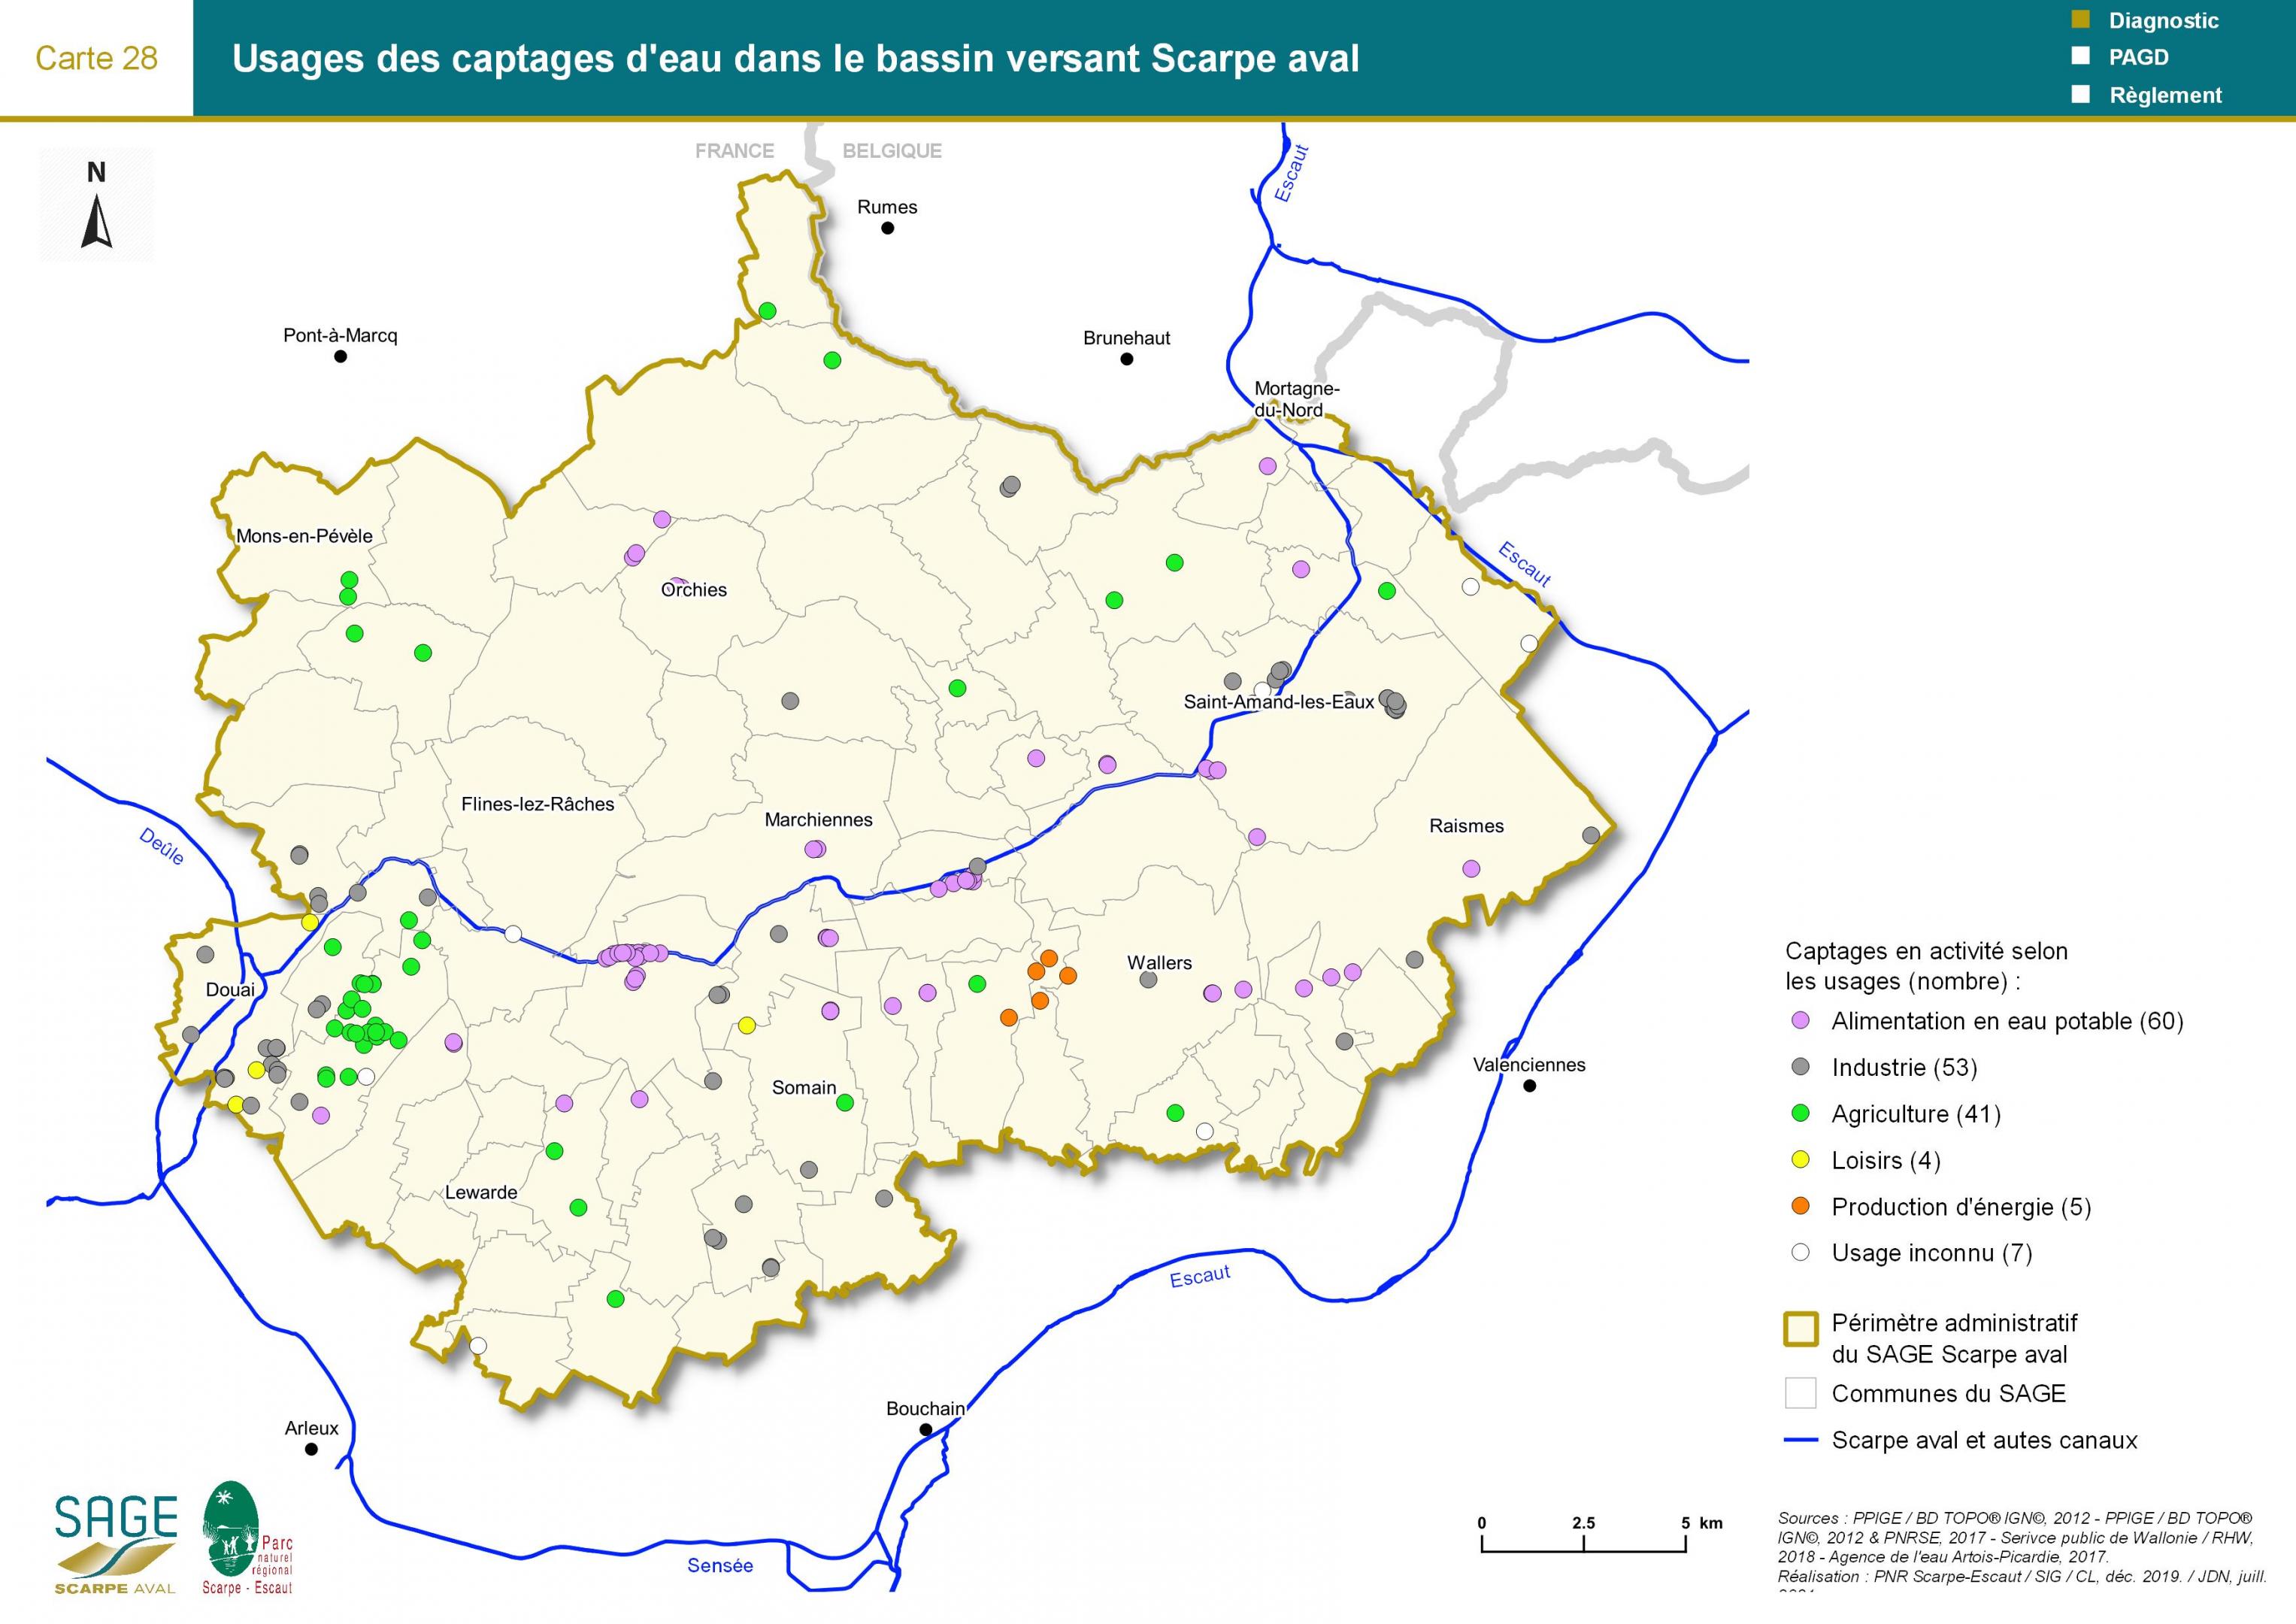 Etat des lieux - Carte 28 : Usages des captages d’eau dans le bassin versant Scarpe aval